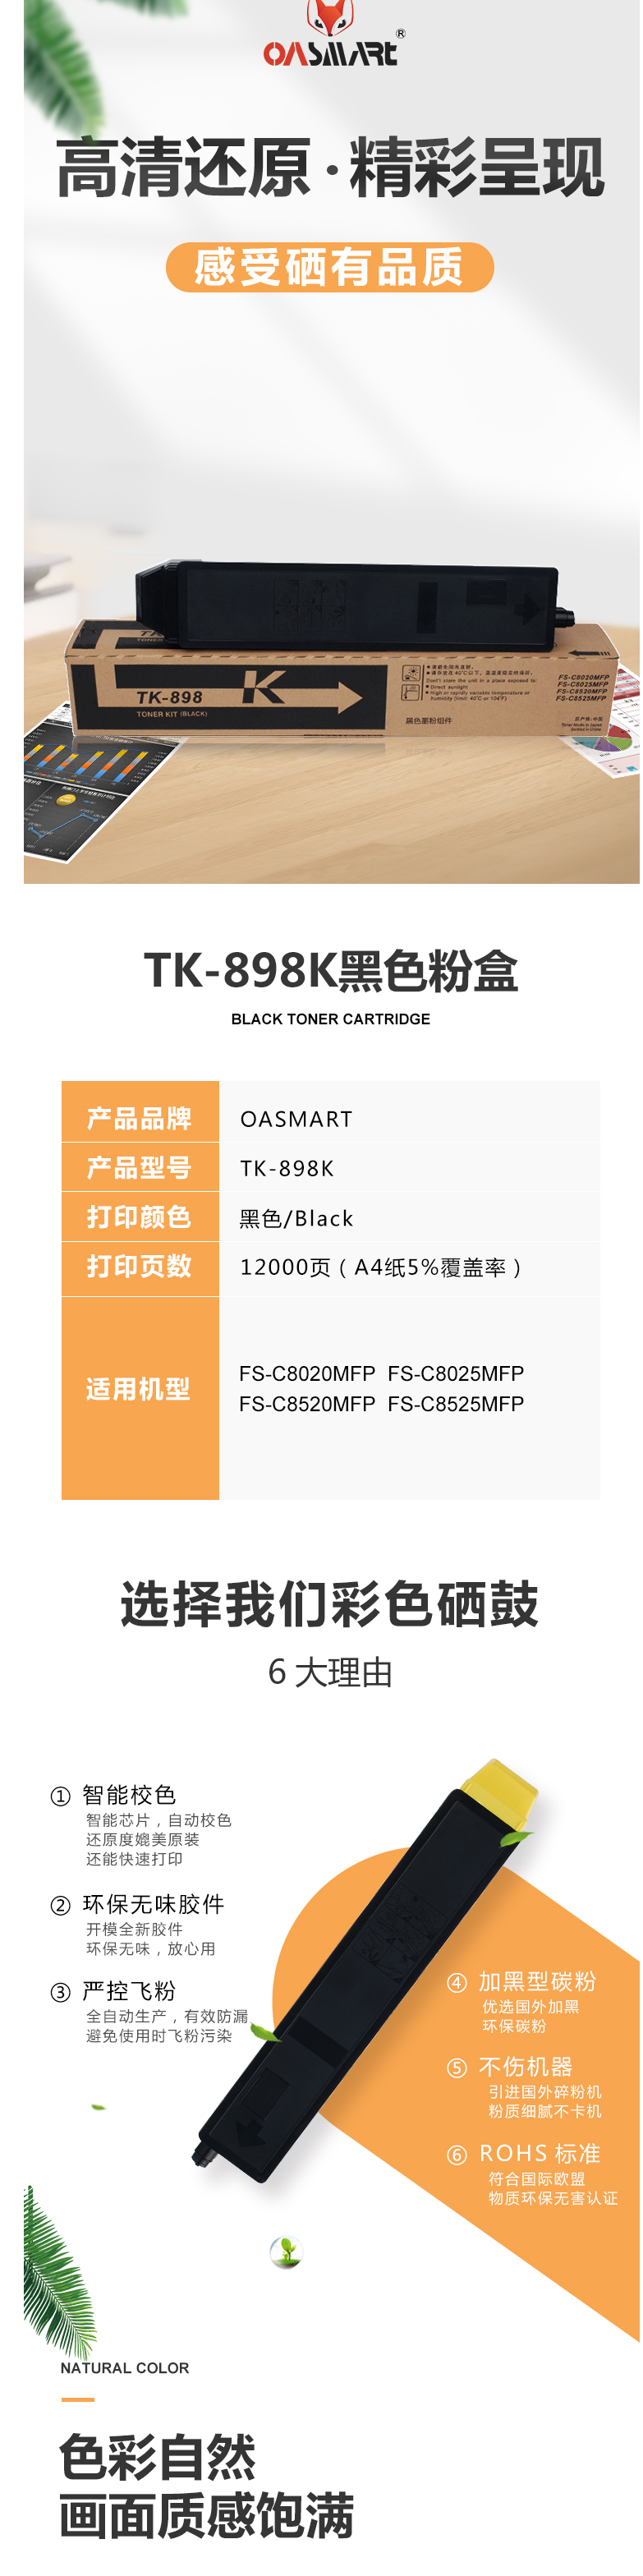 FireShot Capture 347 - 【OASMARTTK-898K】OASMART（欧司特）TK-898K _ - https___item.jd.com_100016360038.html.png